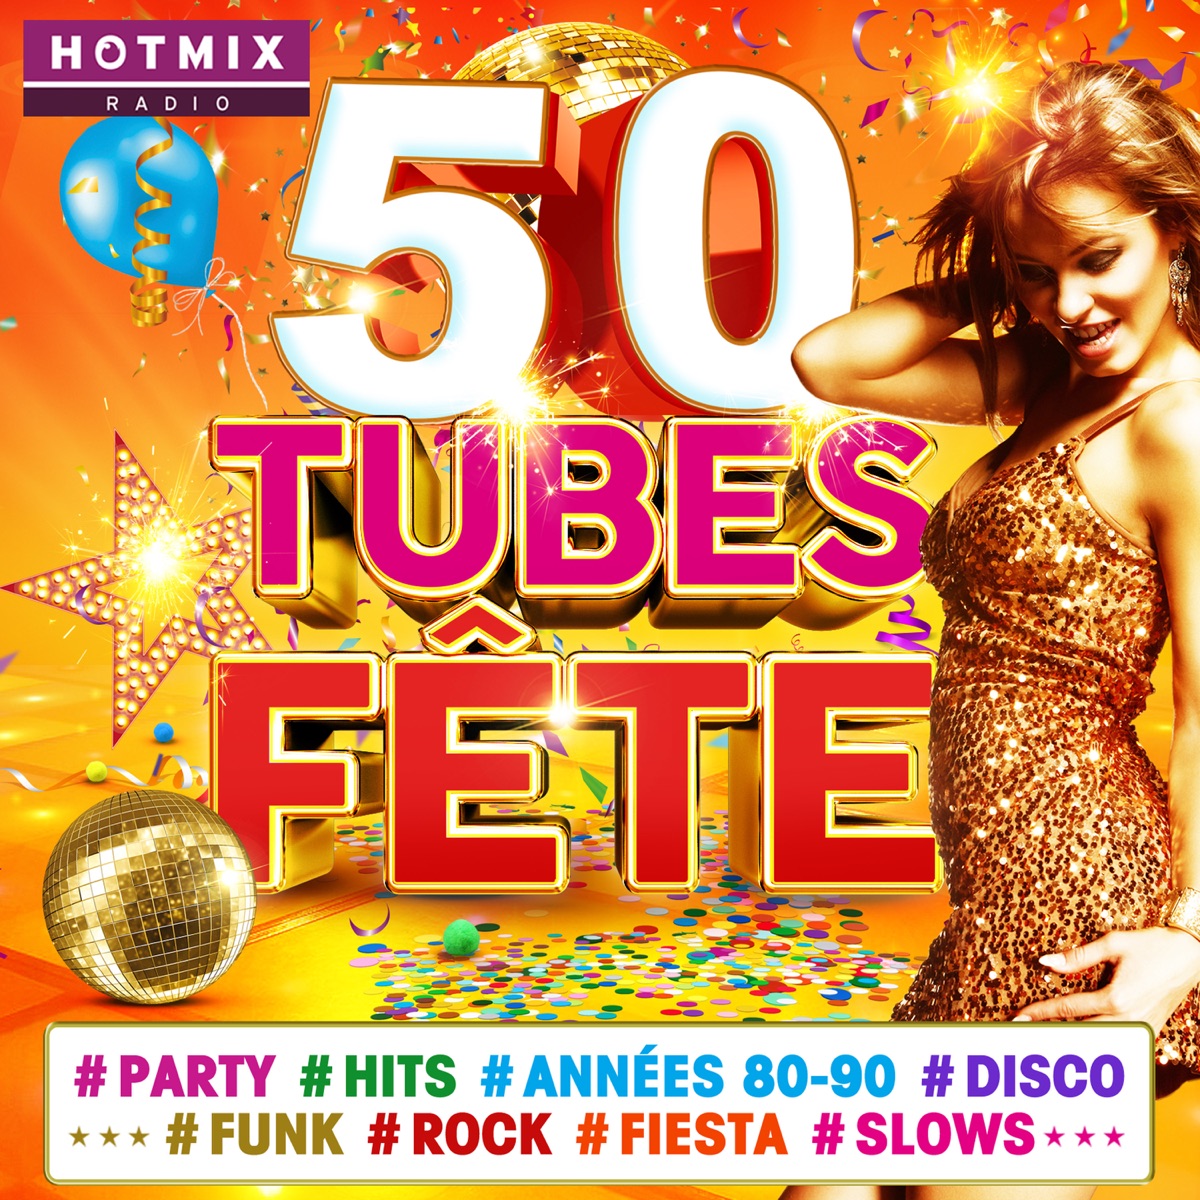 50 Tubes Fête #Party #Hits #Années 80-90 #Disco #Funk #Rock #Fiesta #Slows  (by Hotmixradio) – Album par Multi-interprètes – Apple Music